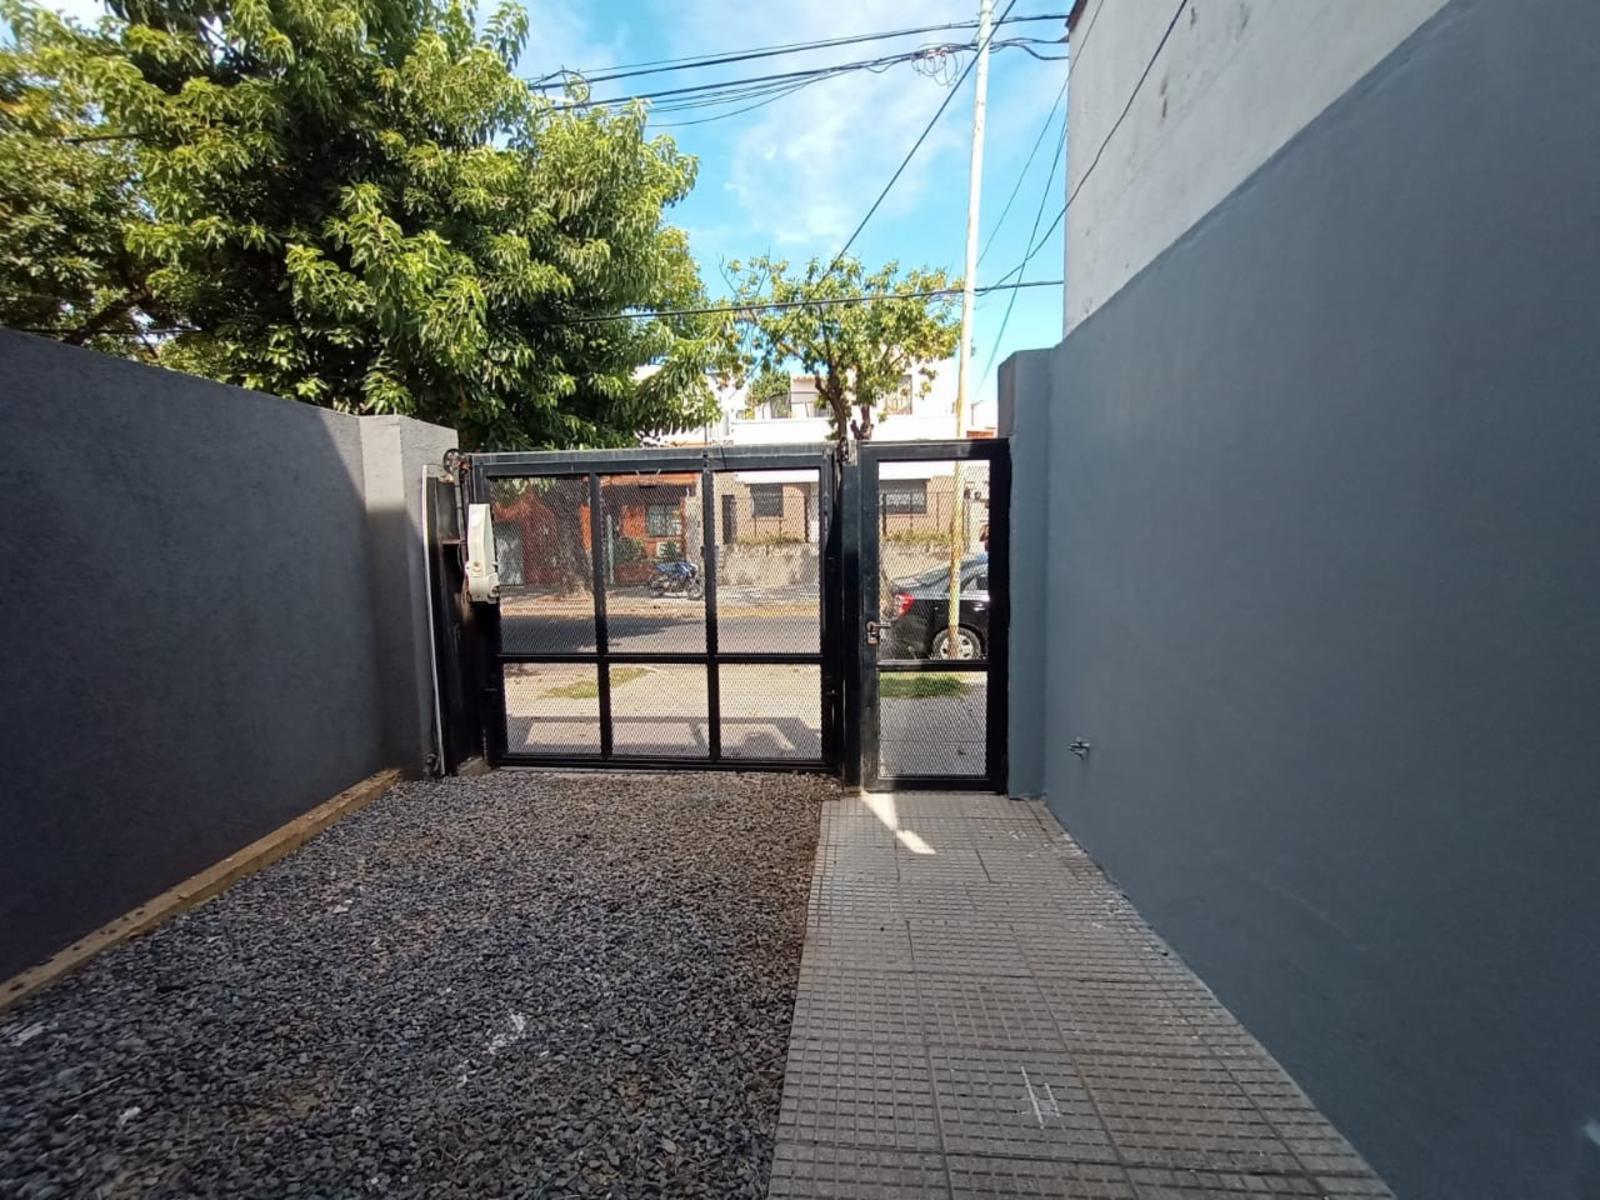 Duplex en Villa Pueyrredon 3 Ambientes Garage Fondo libre y Terraza con Parrilla a metros Av. Salvad